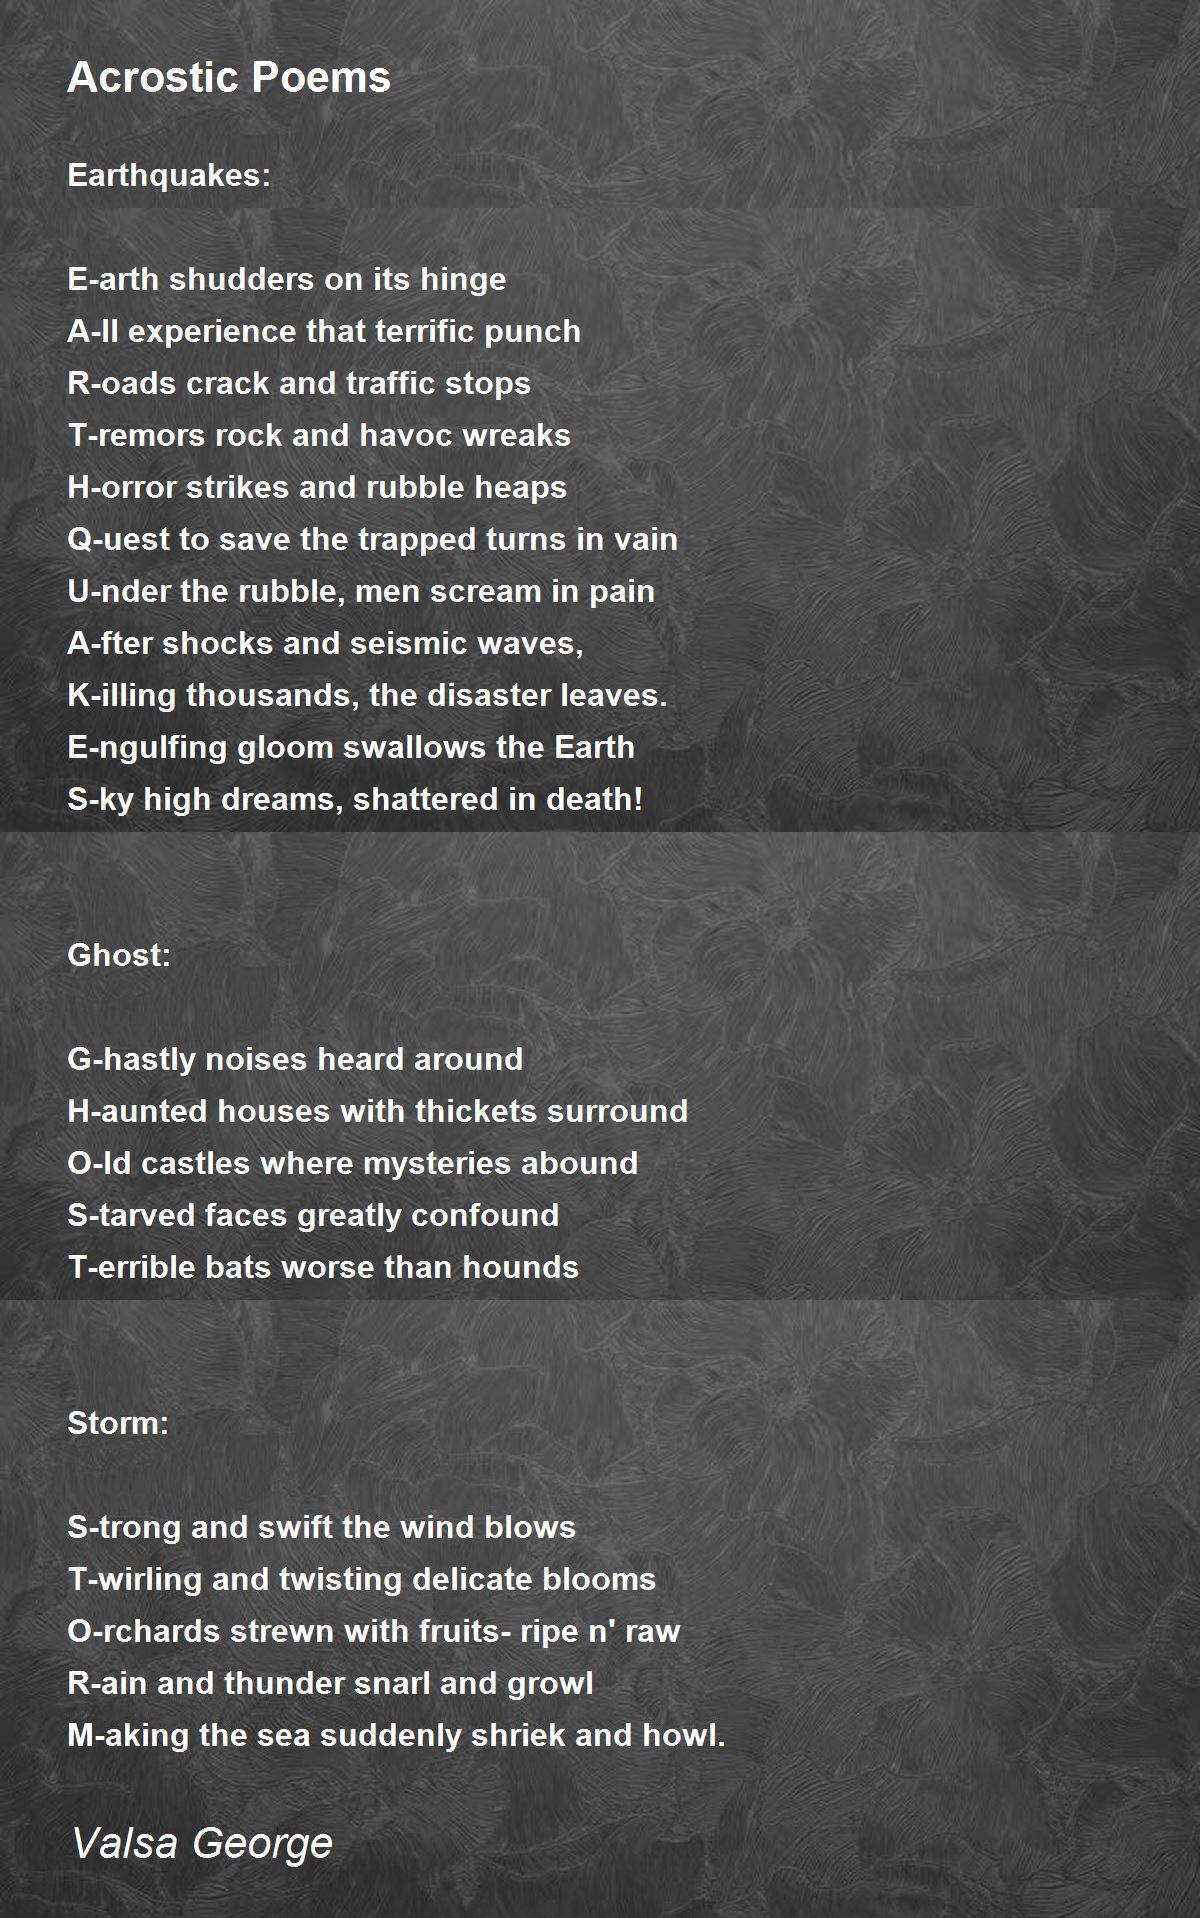 Acrostic Poems by Valsa George - Acrostic Poems Poem